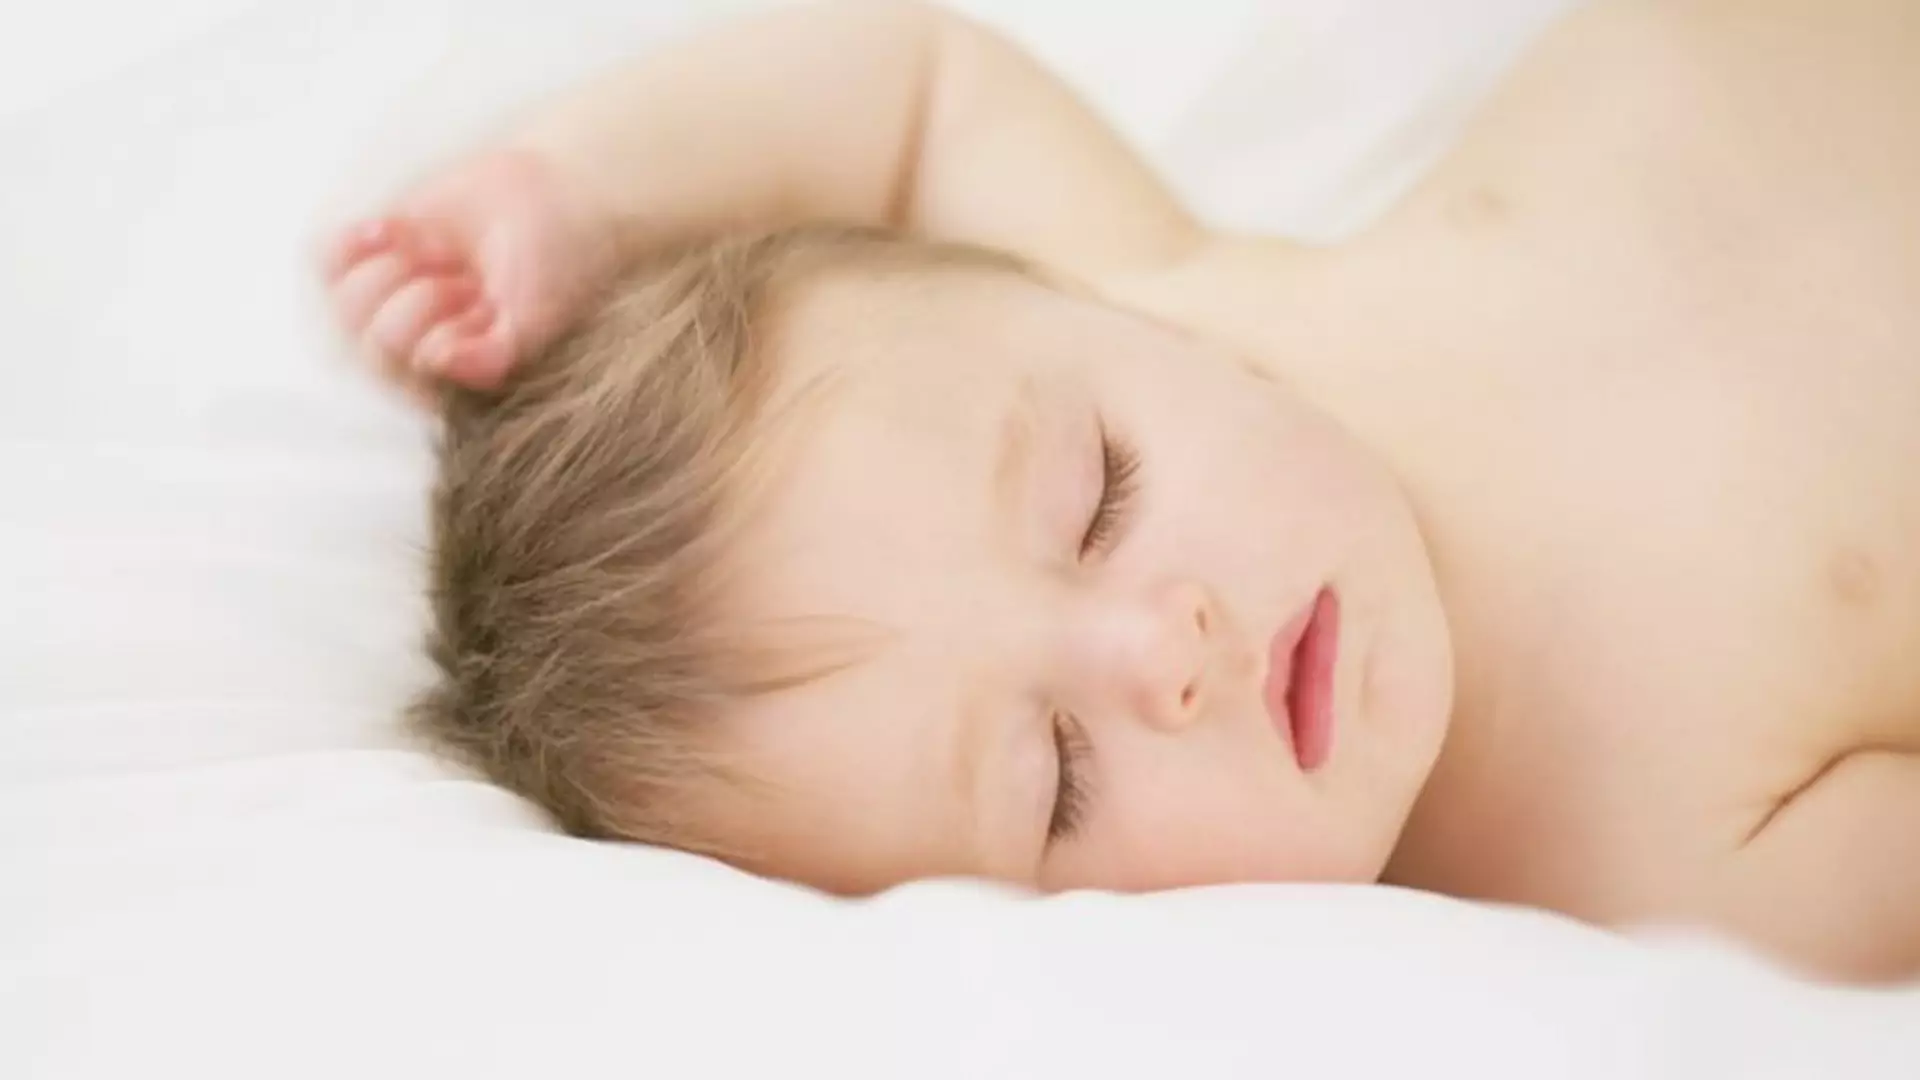 Czkawka u niemowlaka: przyczyny, jak zwalczyć czkawkę u noworodka?